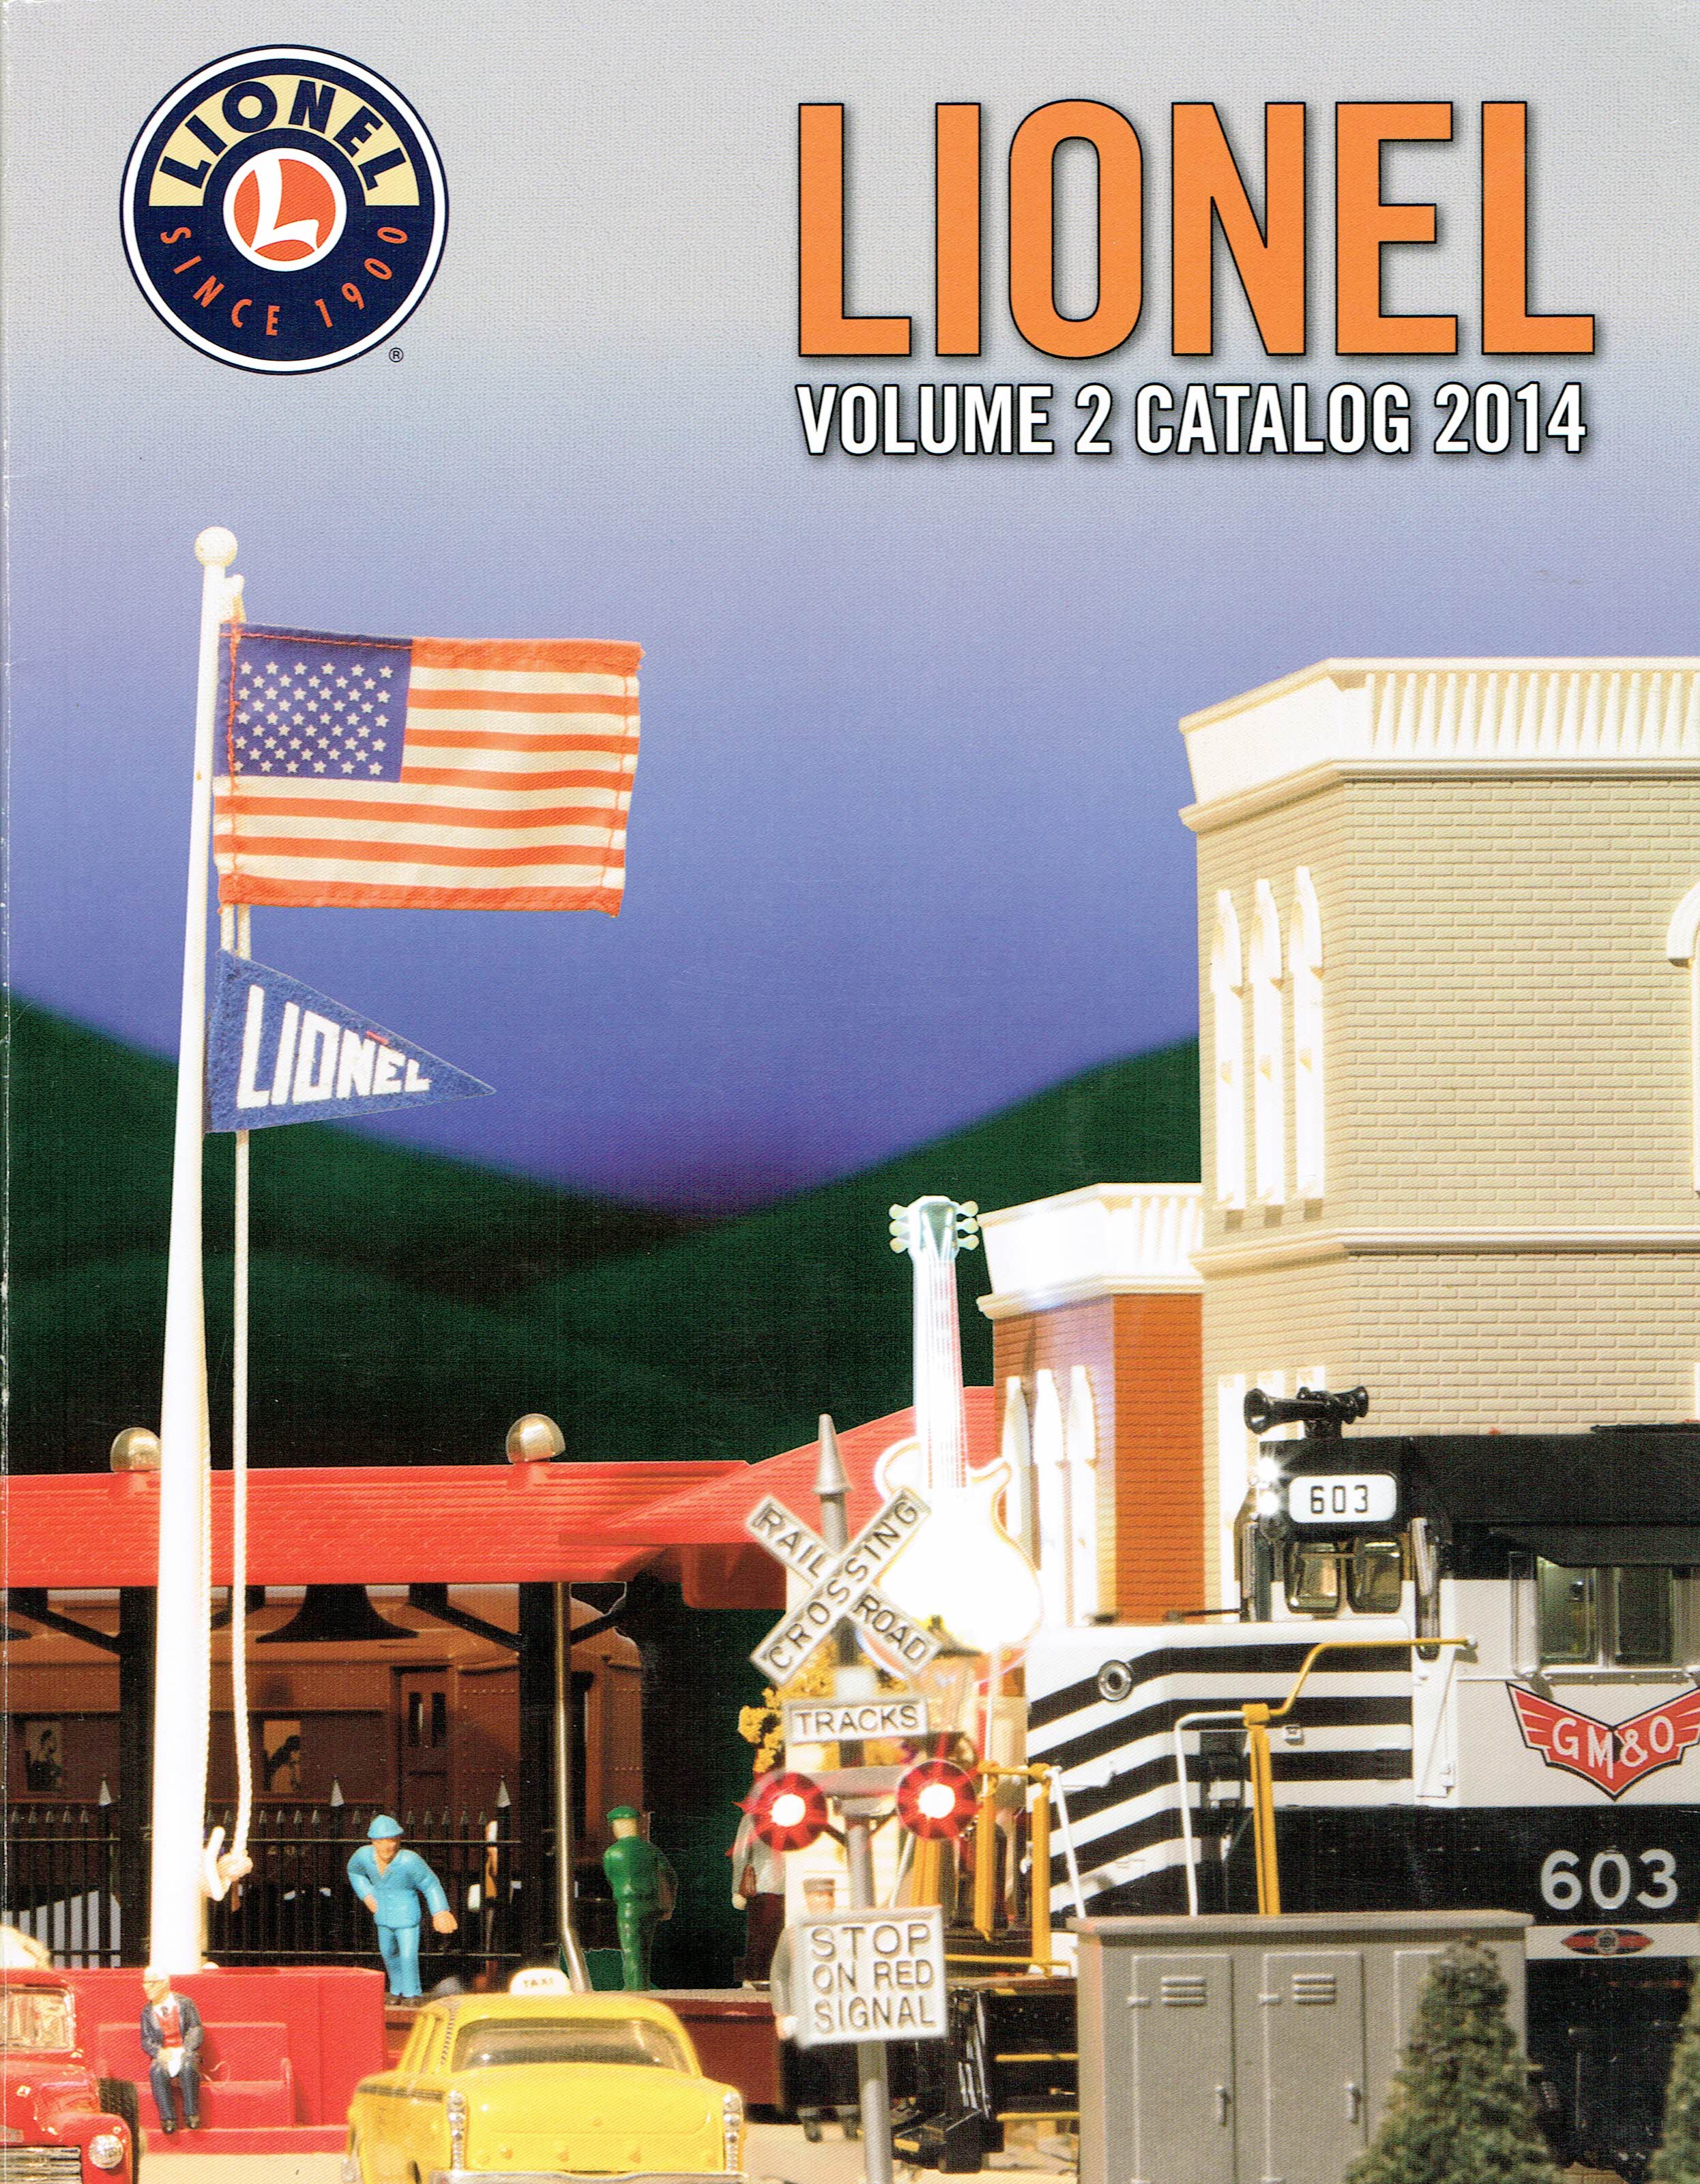 Lionel 2014 Volume 2 Catalog image